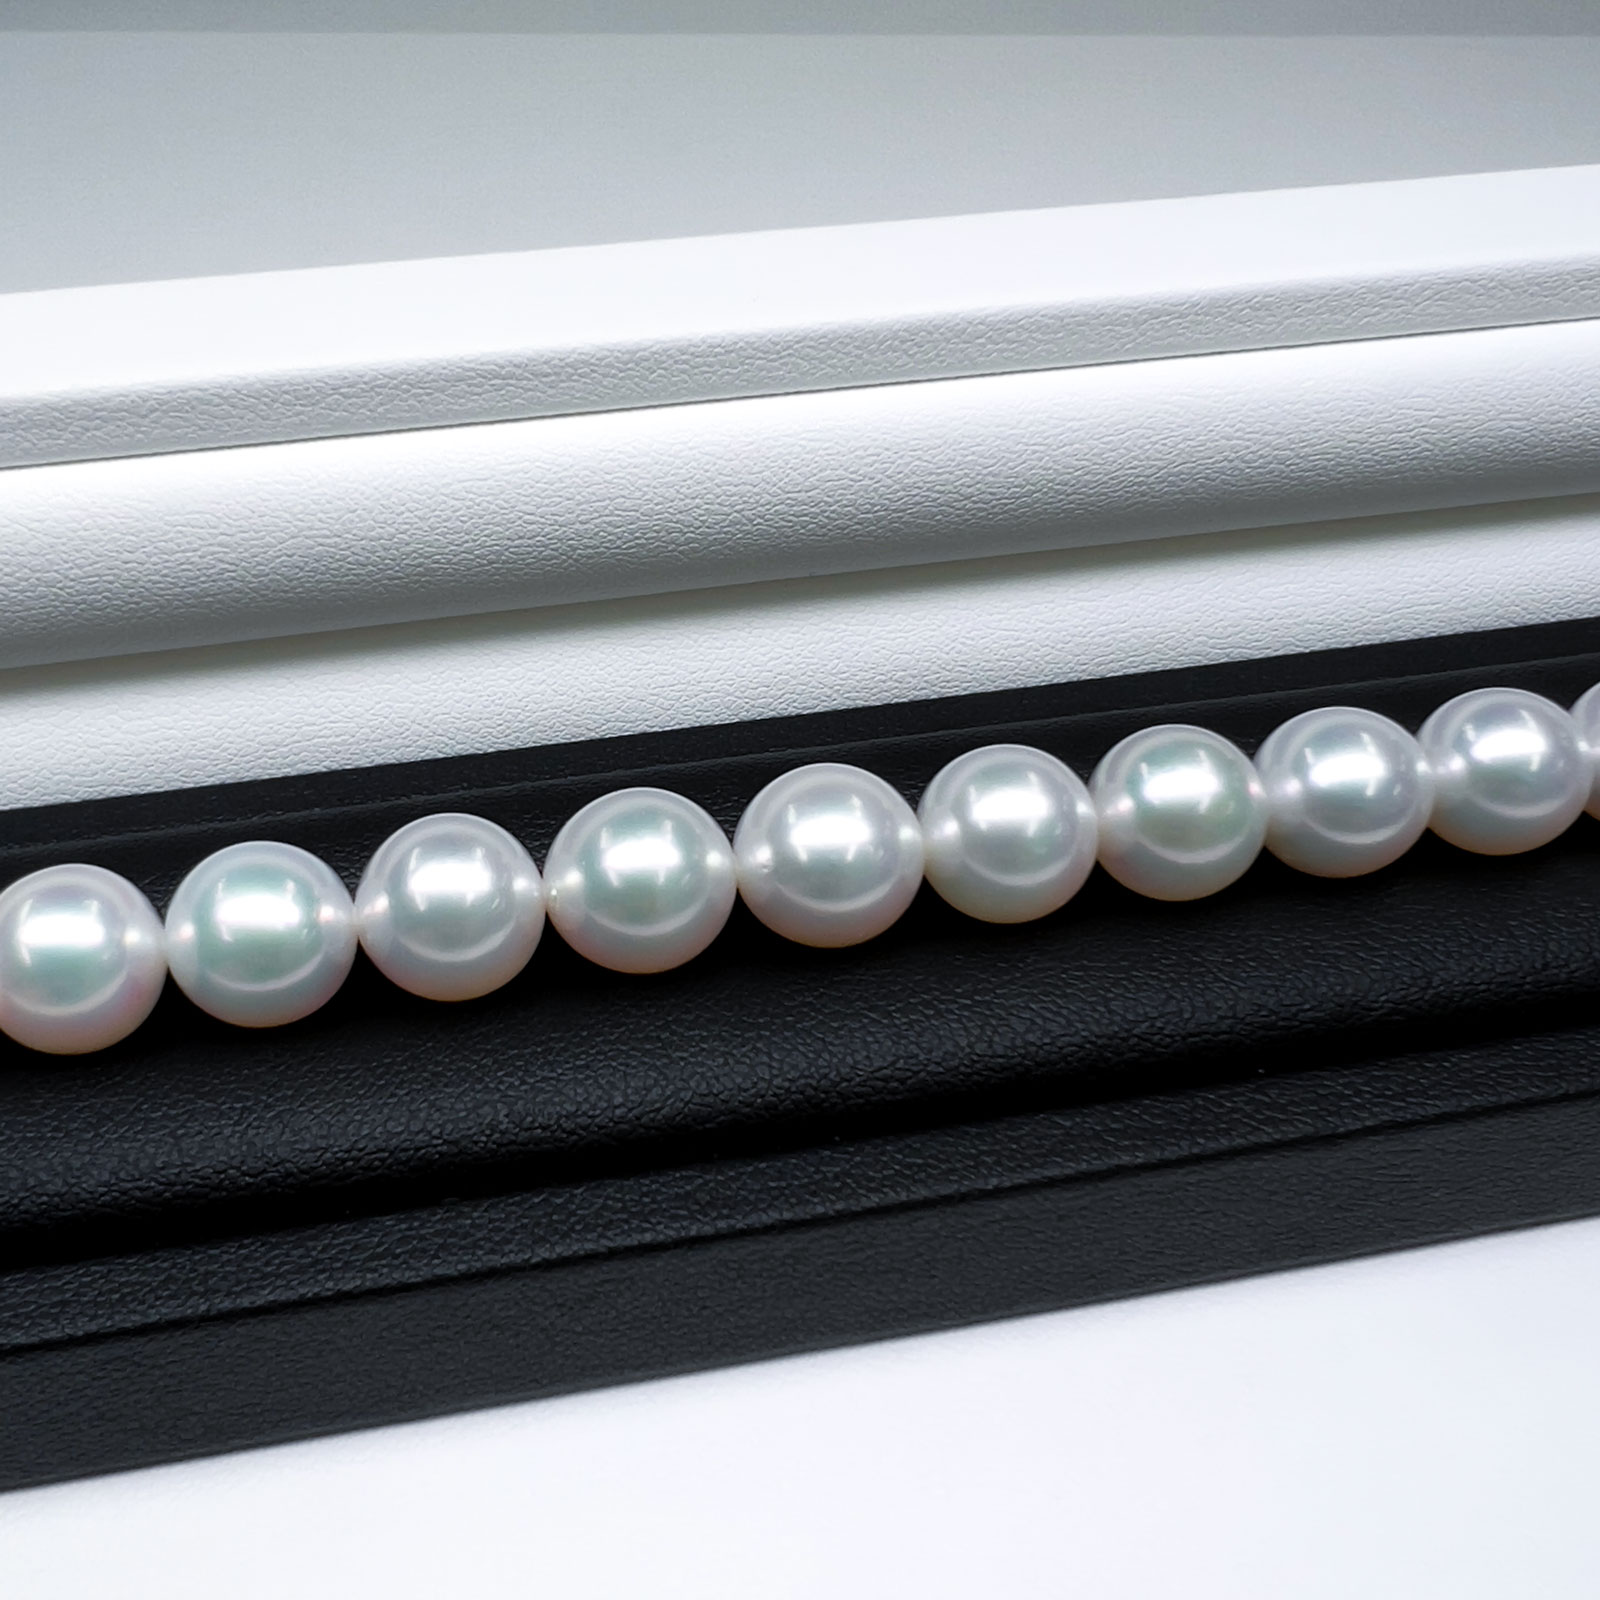 真珠大卸からの直販 テリ評価85点 最大サイズにて実質最高クラスの美しさ 越物オーロラ花珠真珠ネックレス ホワイト系グリーンピンク 10 10 7mm 送料無料 ネックレス ペンダント